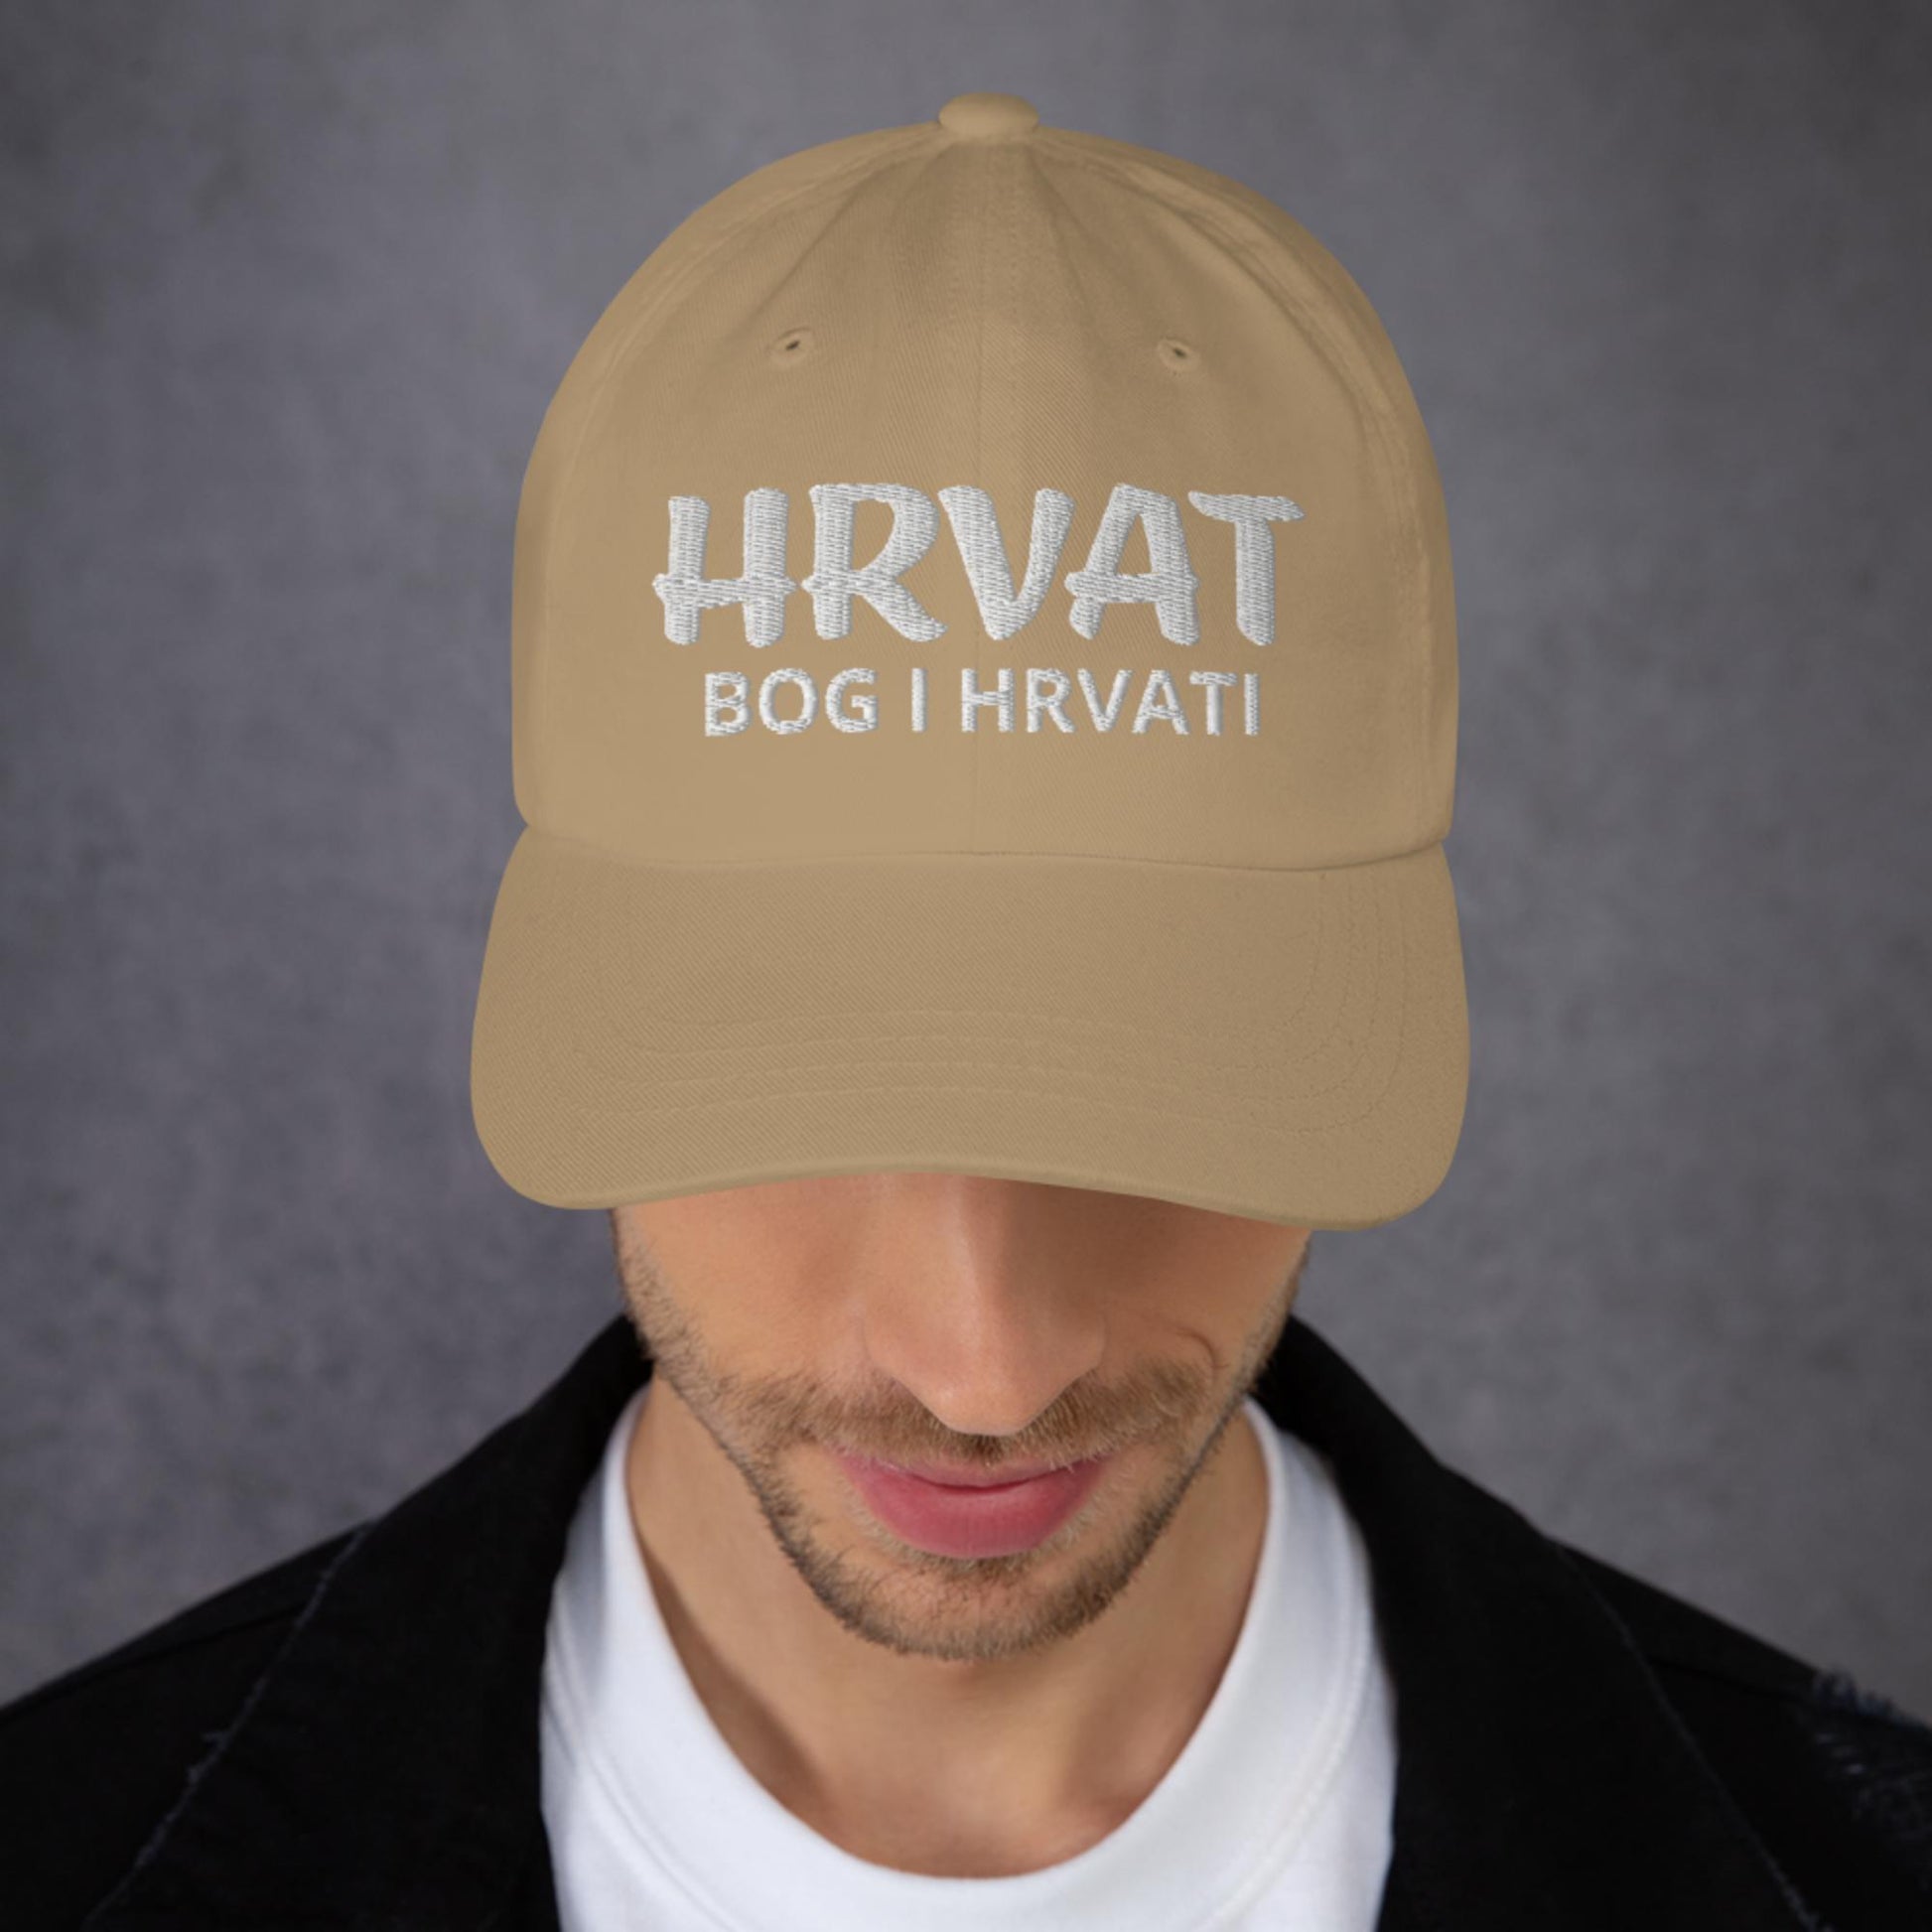 Croatian Hat - Bog I Hrvat, Adjustable Strap, Unstructured, Low-Profile